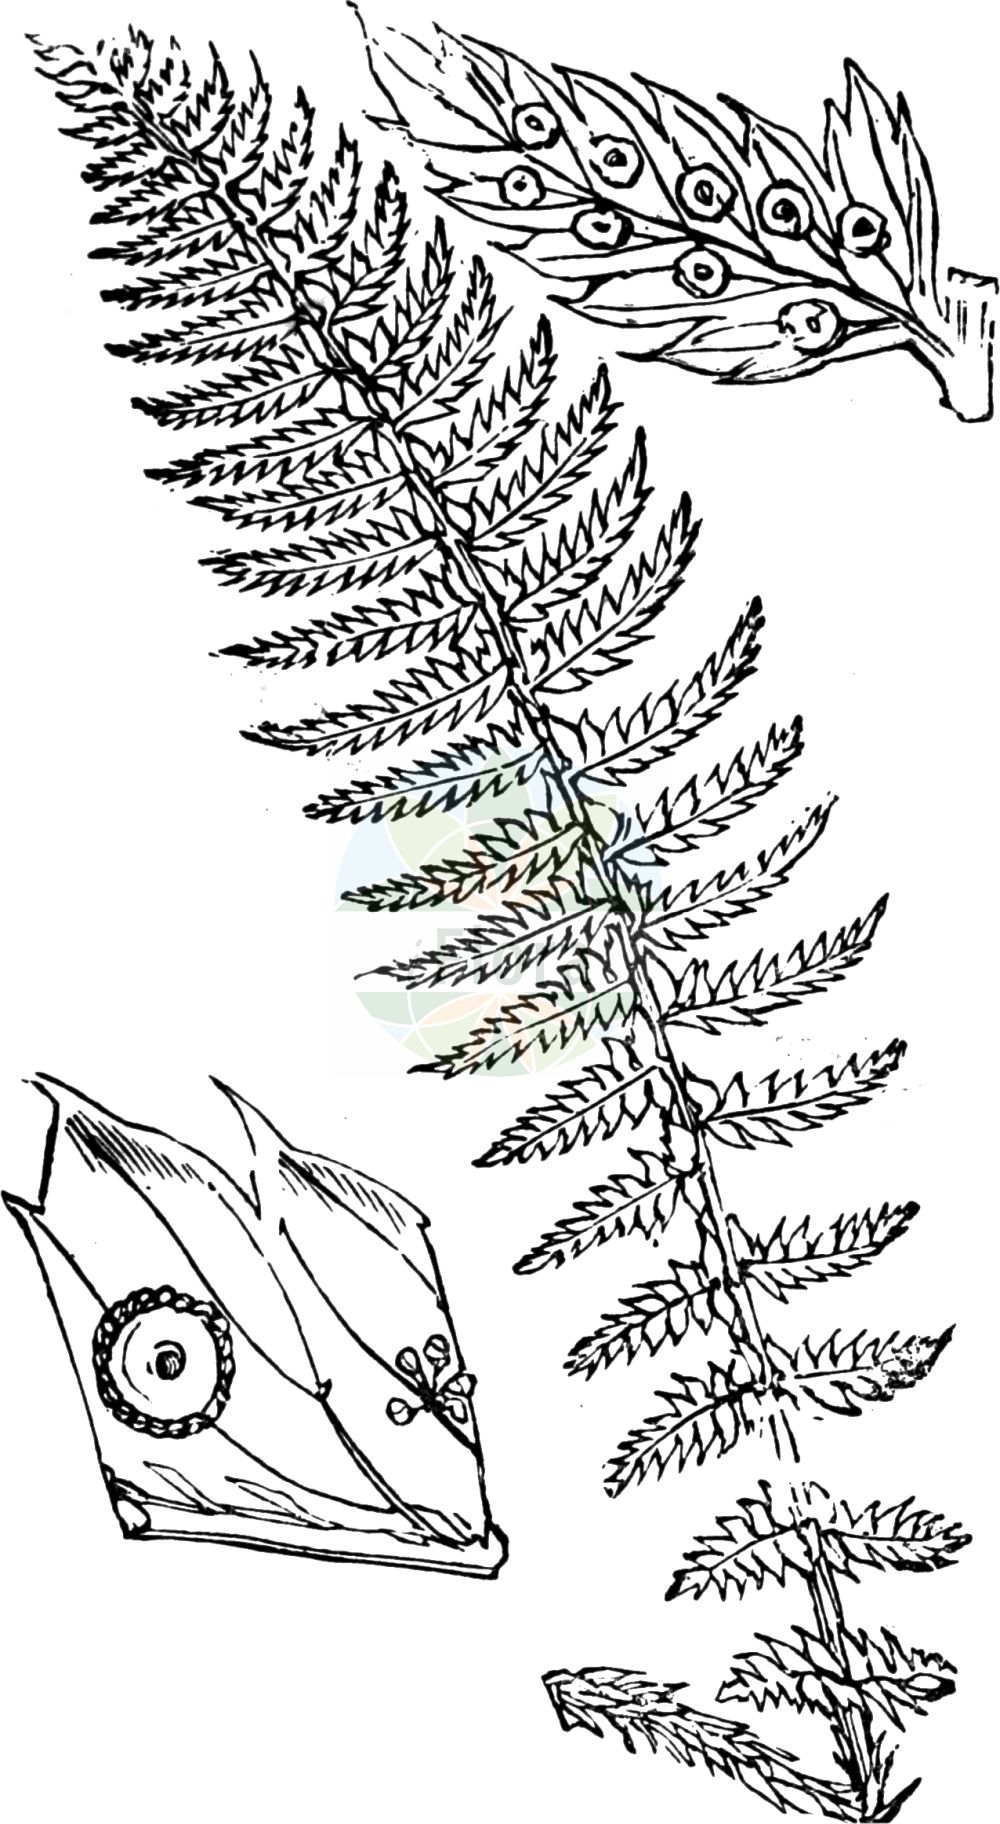 Historische Abbildung von Polystichum aculeatum (Gelappter Schildfarn - Hard Shield-fern). Das Bild zeigt Blatt, Bluete, Frucht und Same. ---- Historical Drawing of Polystichum aculeatum (Gelappter Schildfarn - Hard Shield-fern). The image is showing leaf, flower, fruit and seed.(Polystichum aculeatum,Gelappter Schildfarn,Hard Shield-fern,Aspidium aculeatum,Aspidium lobatum,Dryopteris lobata,Polypodium aculeatum,Polypodium lobatum,Polystichum aculeatum,Polystichum lobatum,Gelappter Schildfarn,Gewoehnlicher Schildfarn,Hard Shield-fern,Polystichum,Schildfarn,Holly-fern,Dryopteridaceae,Wurmfarngewächse,Wood Fern family,Blatt,Bluete,Frucht,Same,leaf,flower,fruit,seed,Fitch et al. (1880))